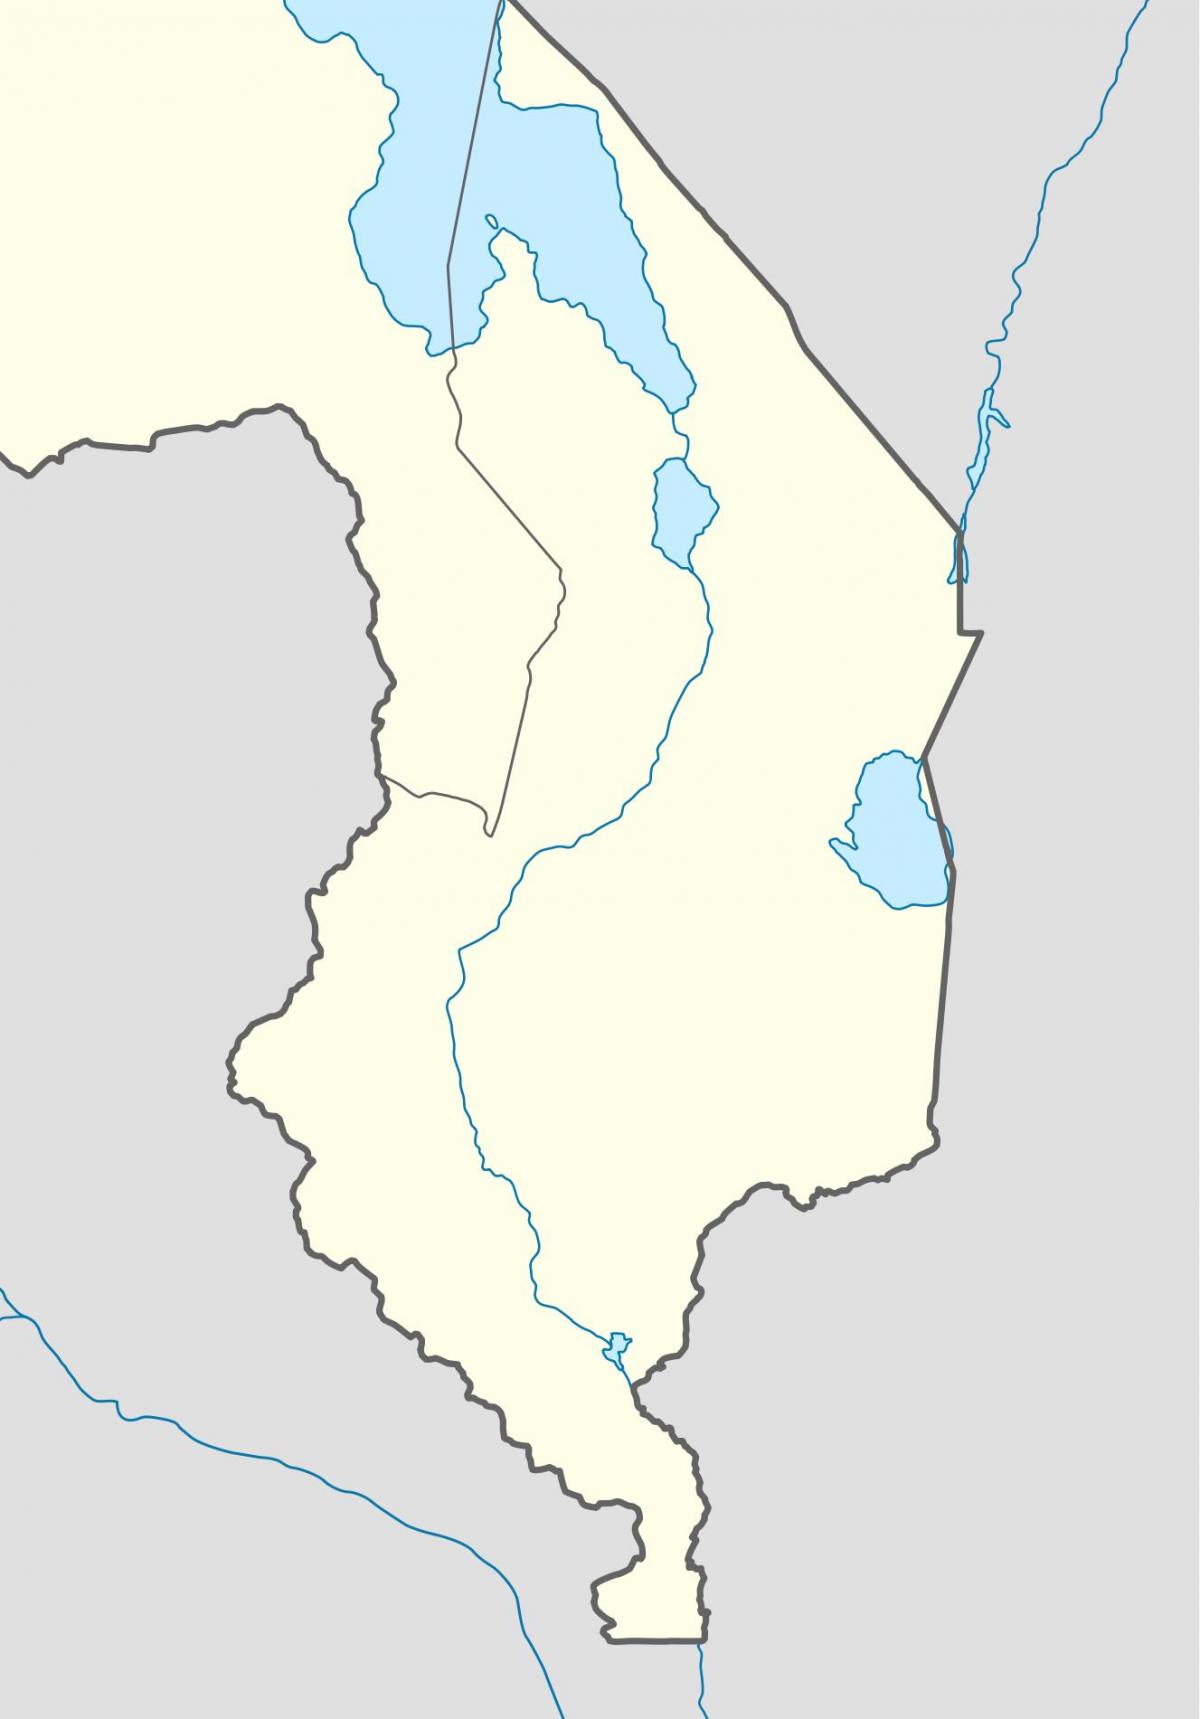 Malawi river haritası 